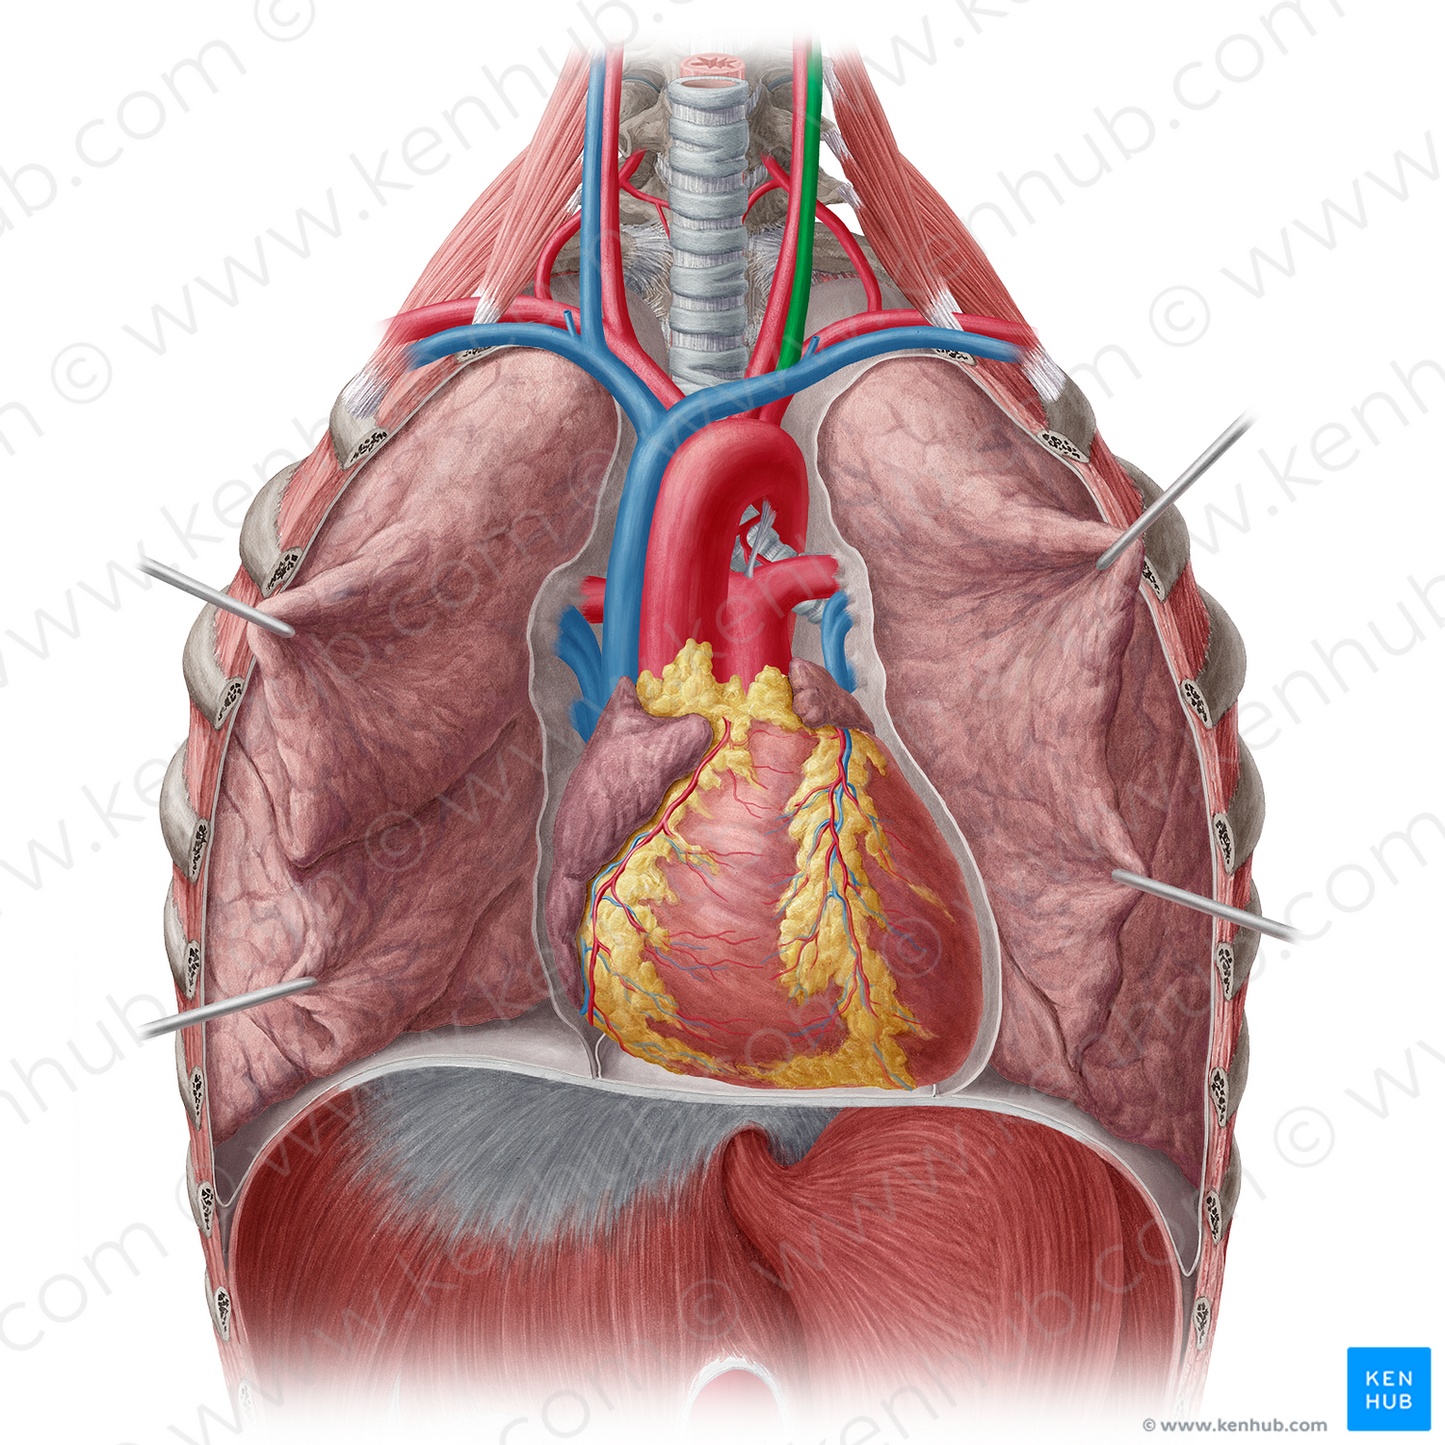 Left internal jugular vein (#10376)